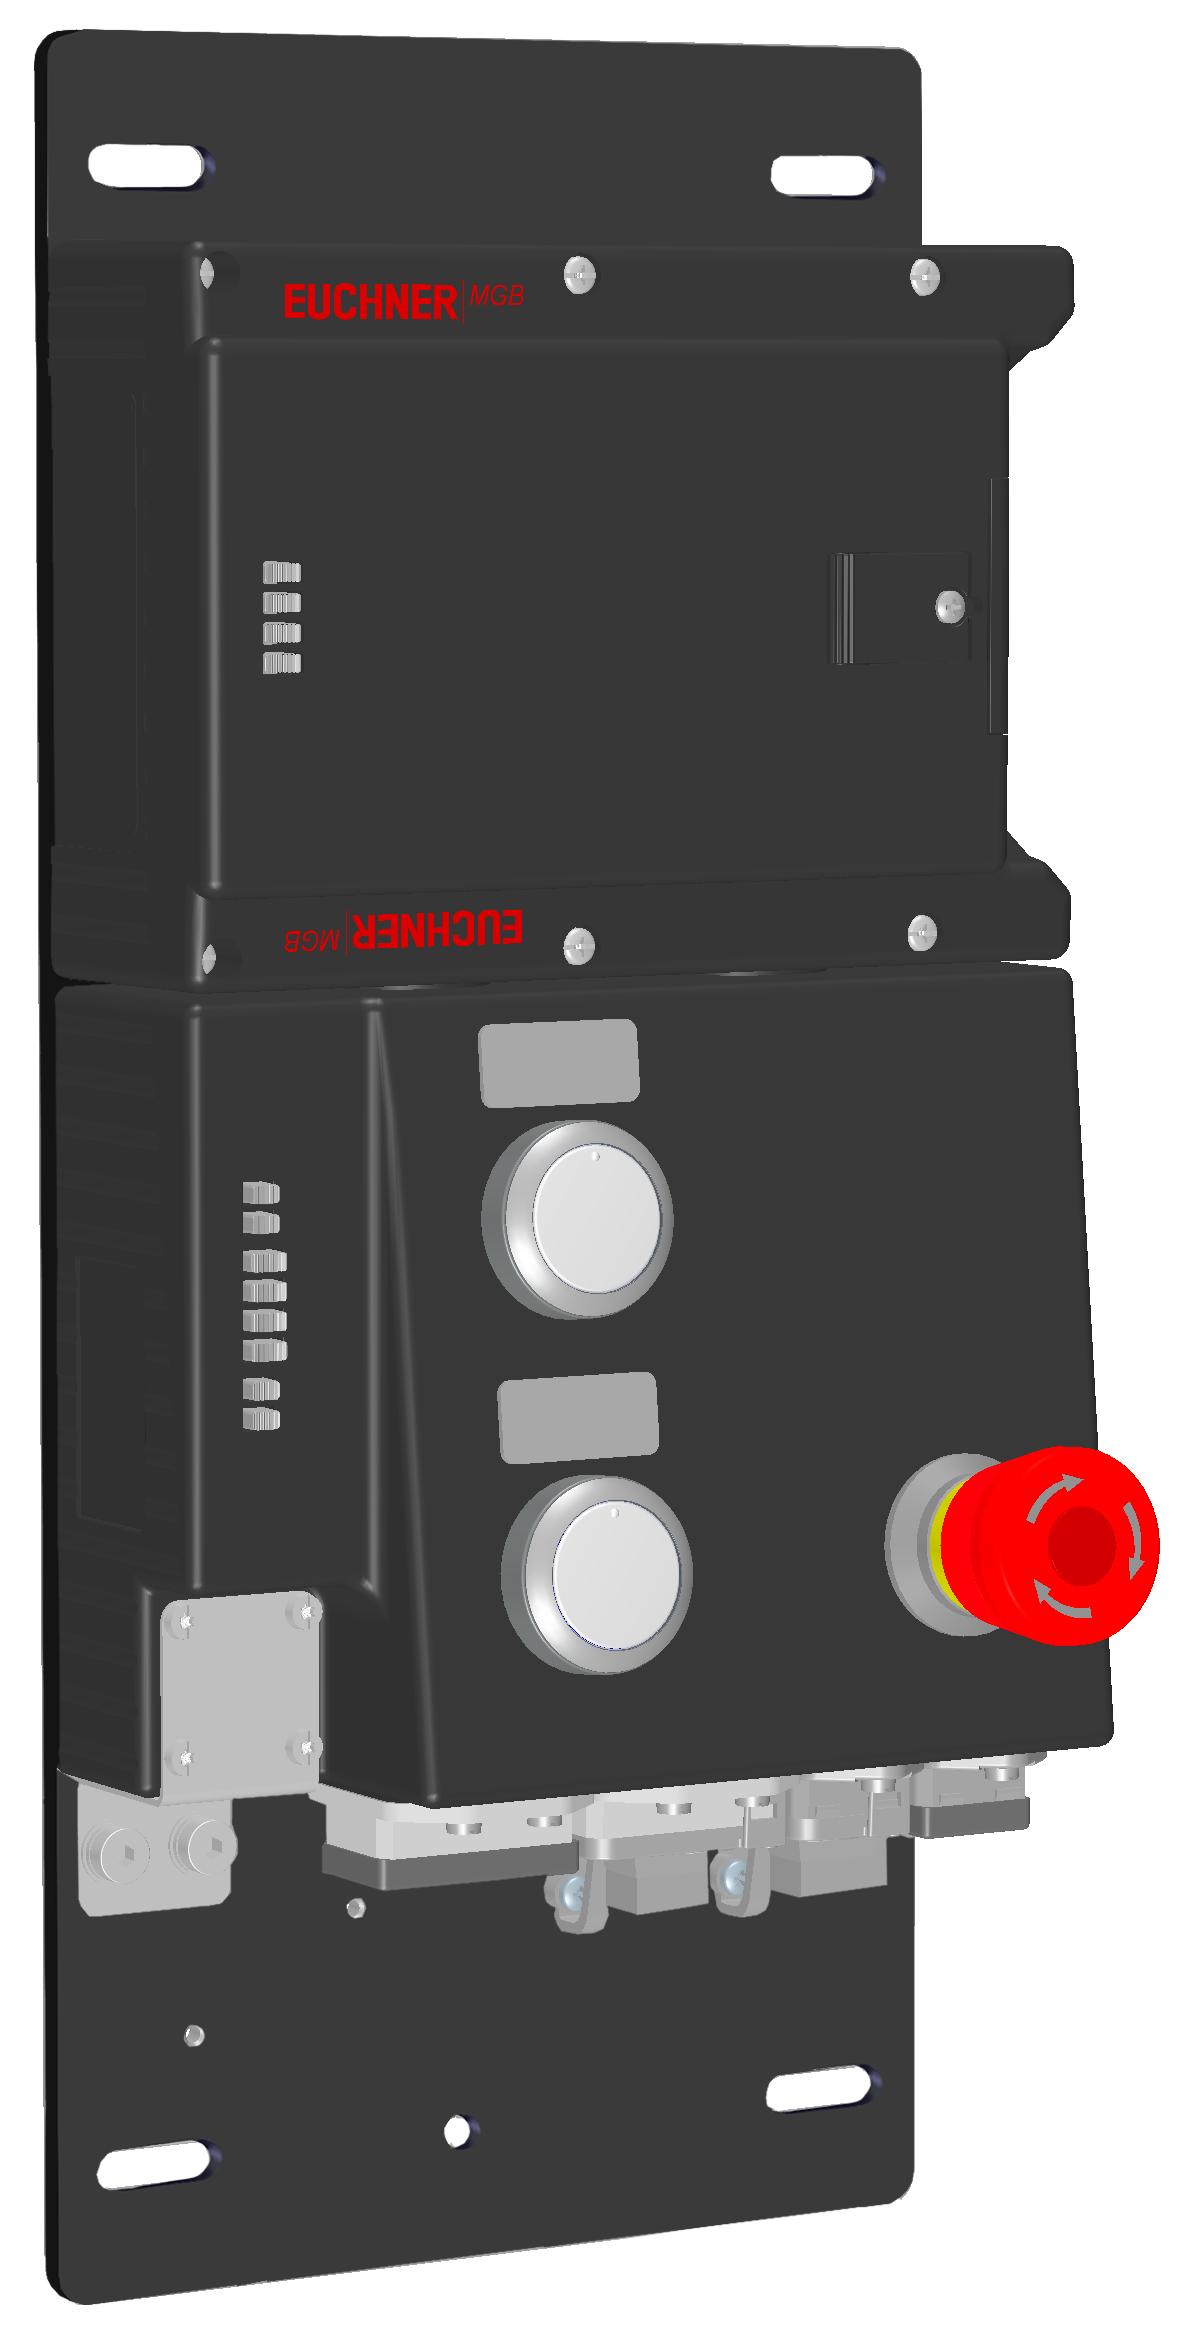 Locking modules MGB-L2B-PNA-R-121840  (Order no. 121840)